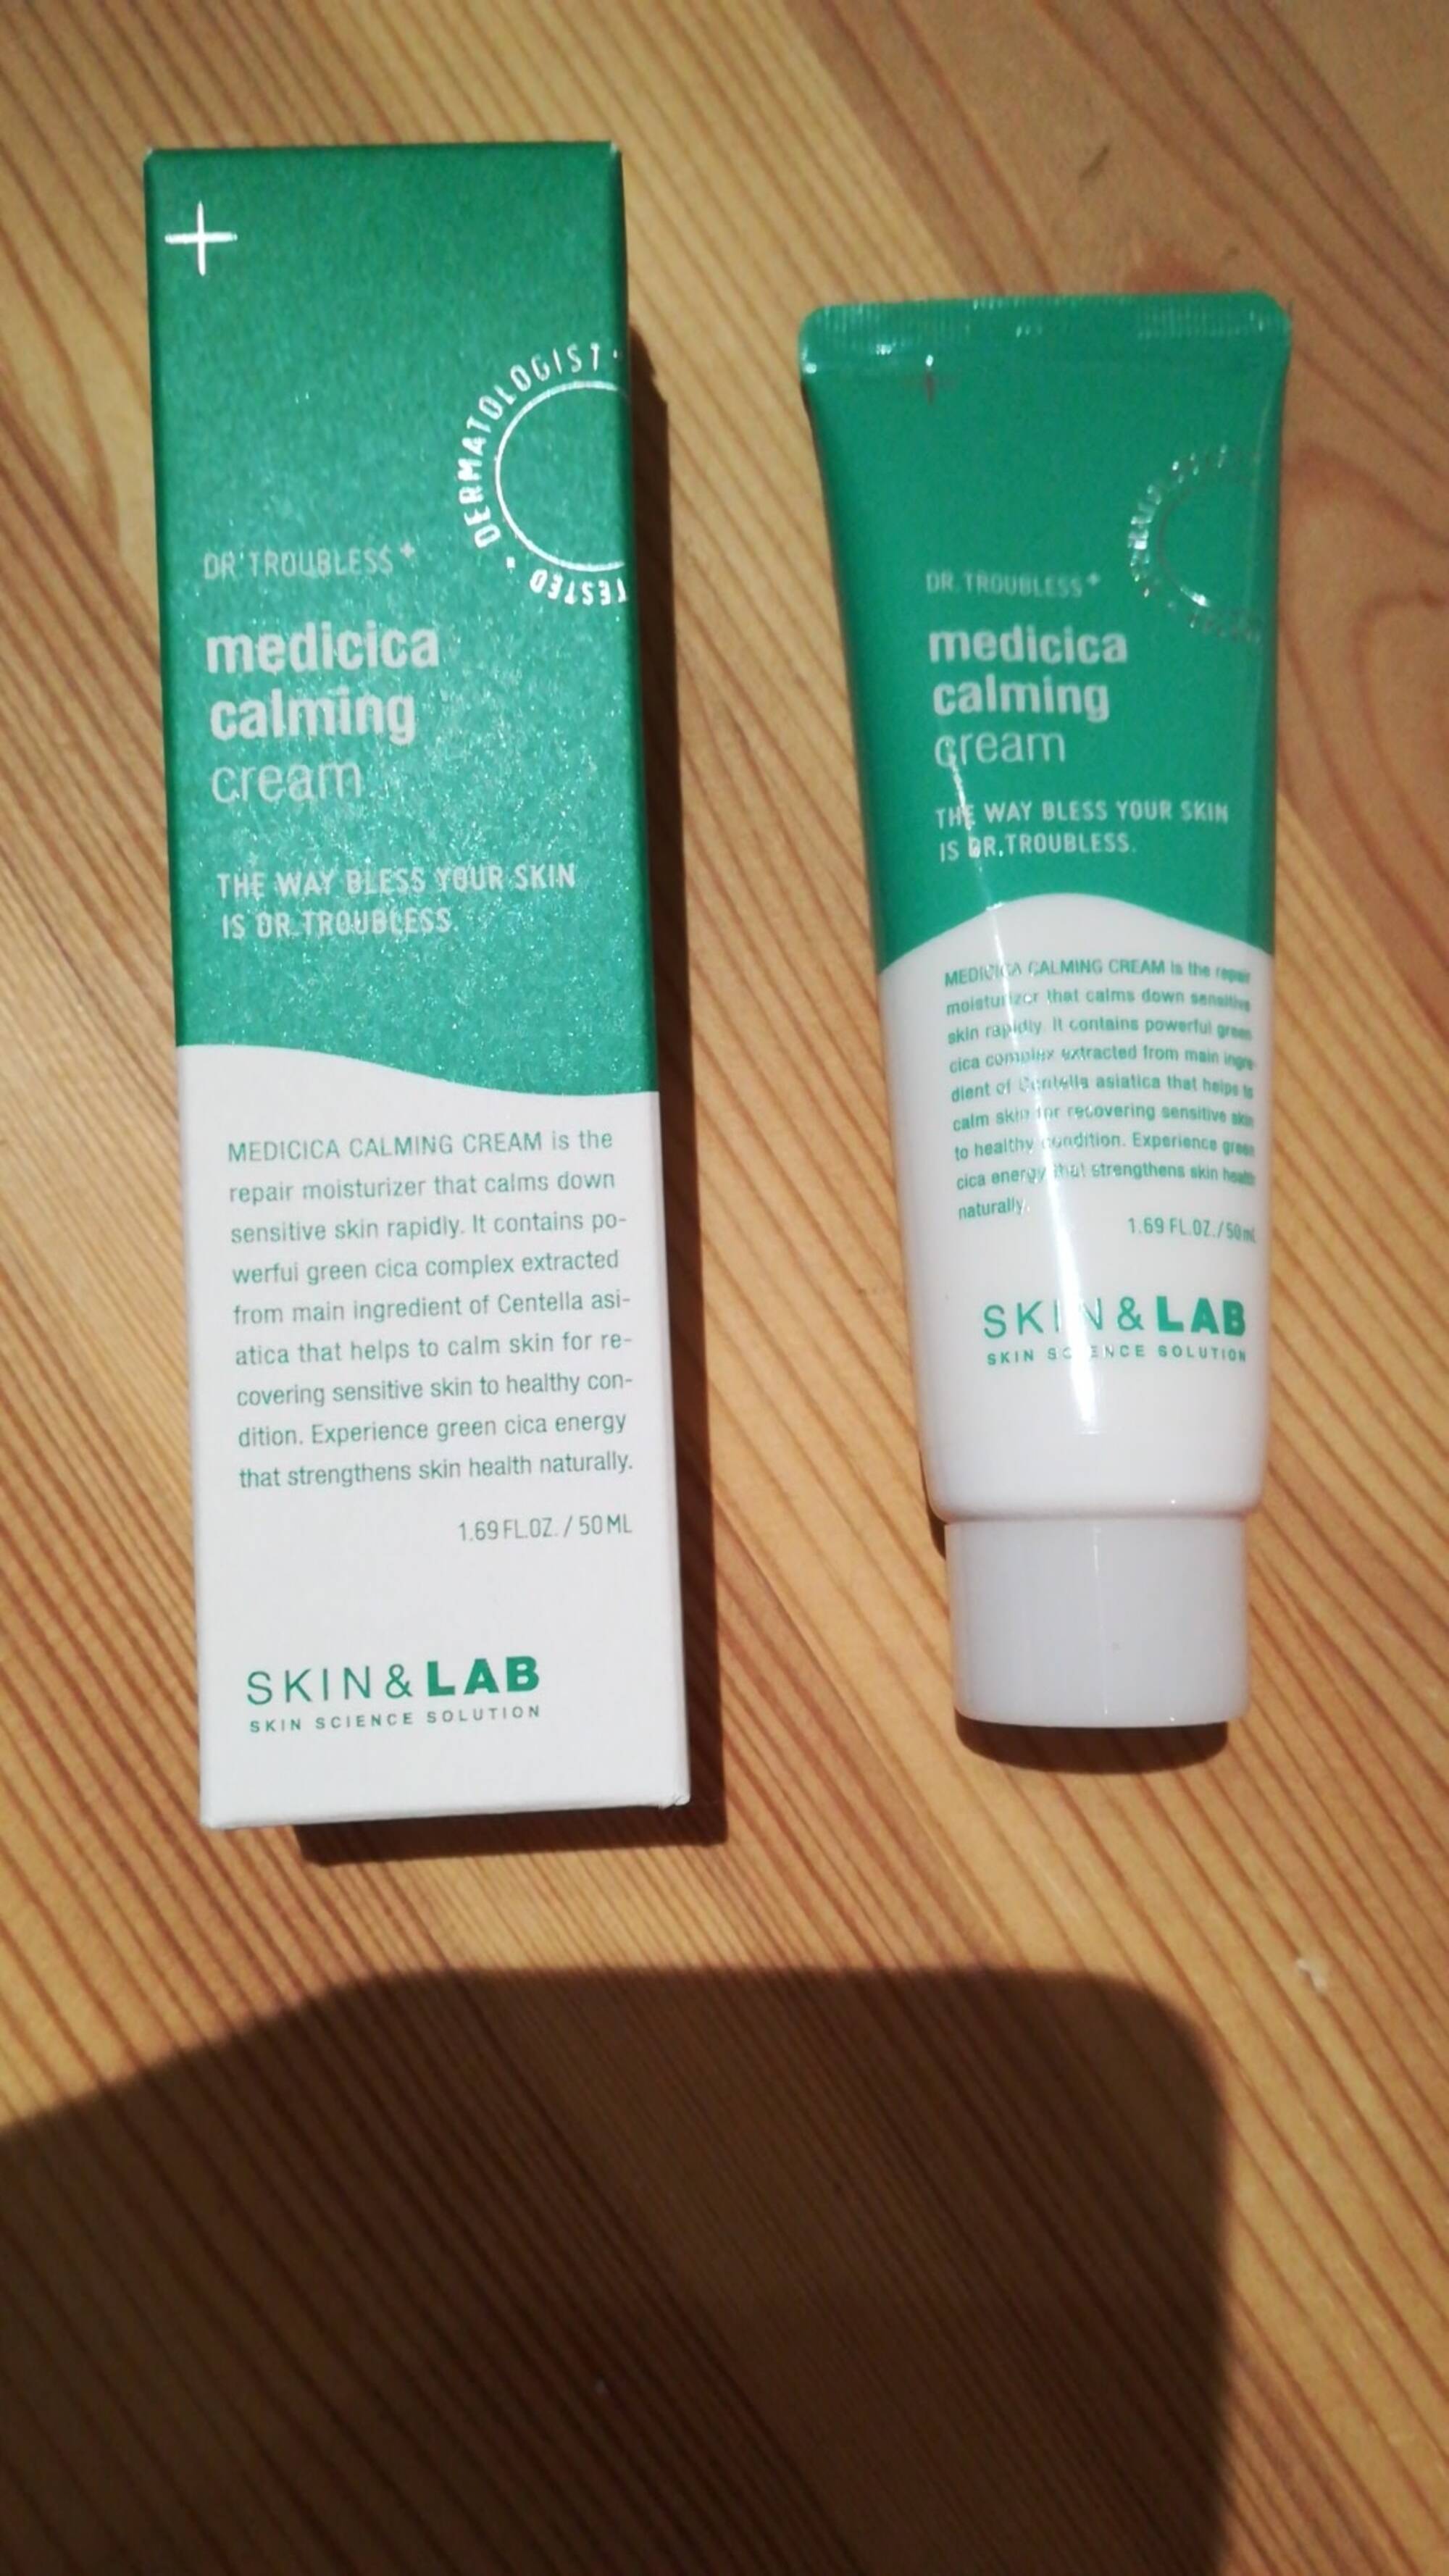 SKIN&LAB - Medicica calming cream